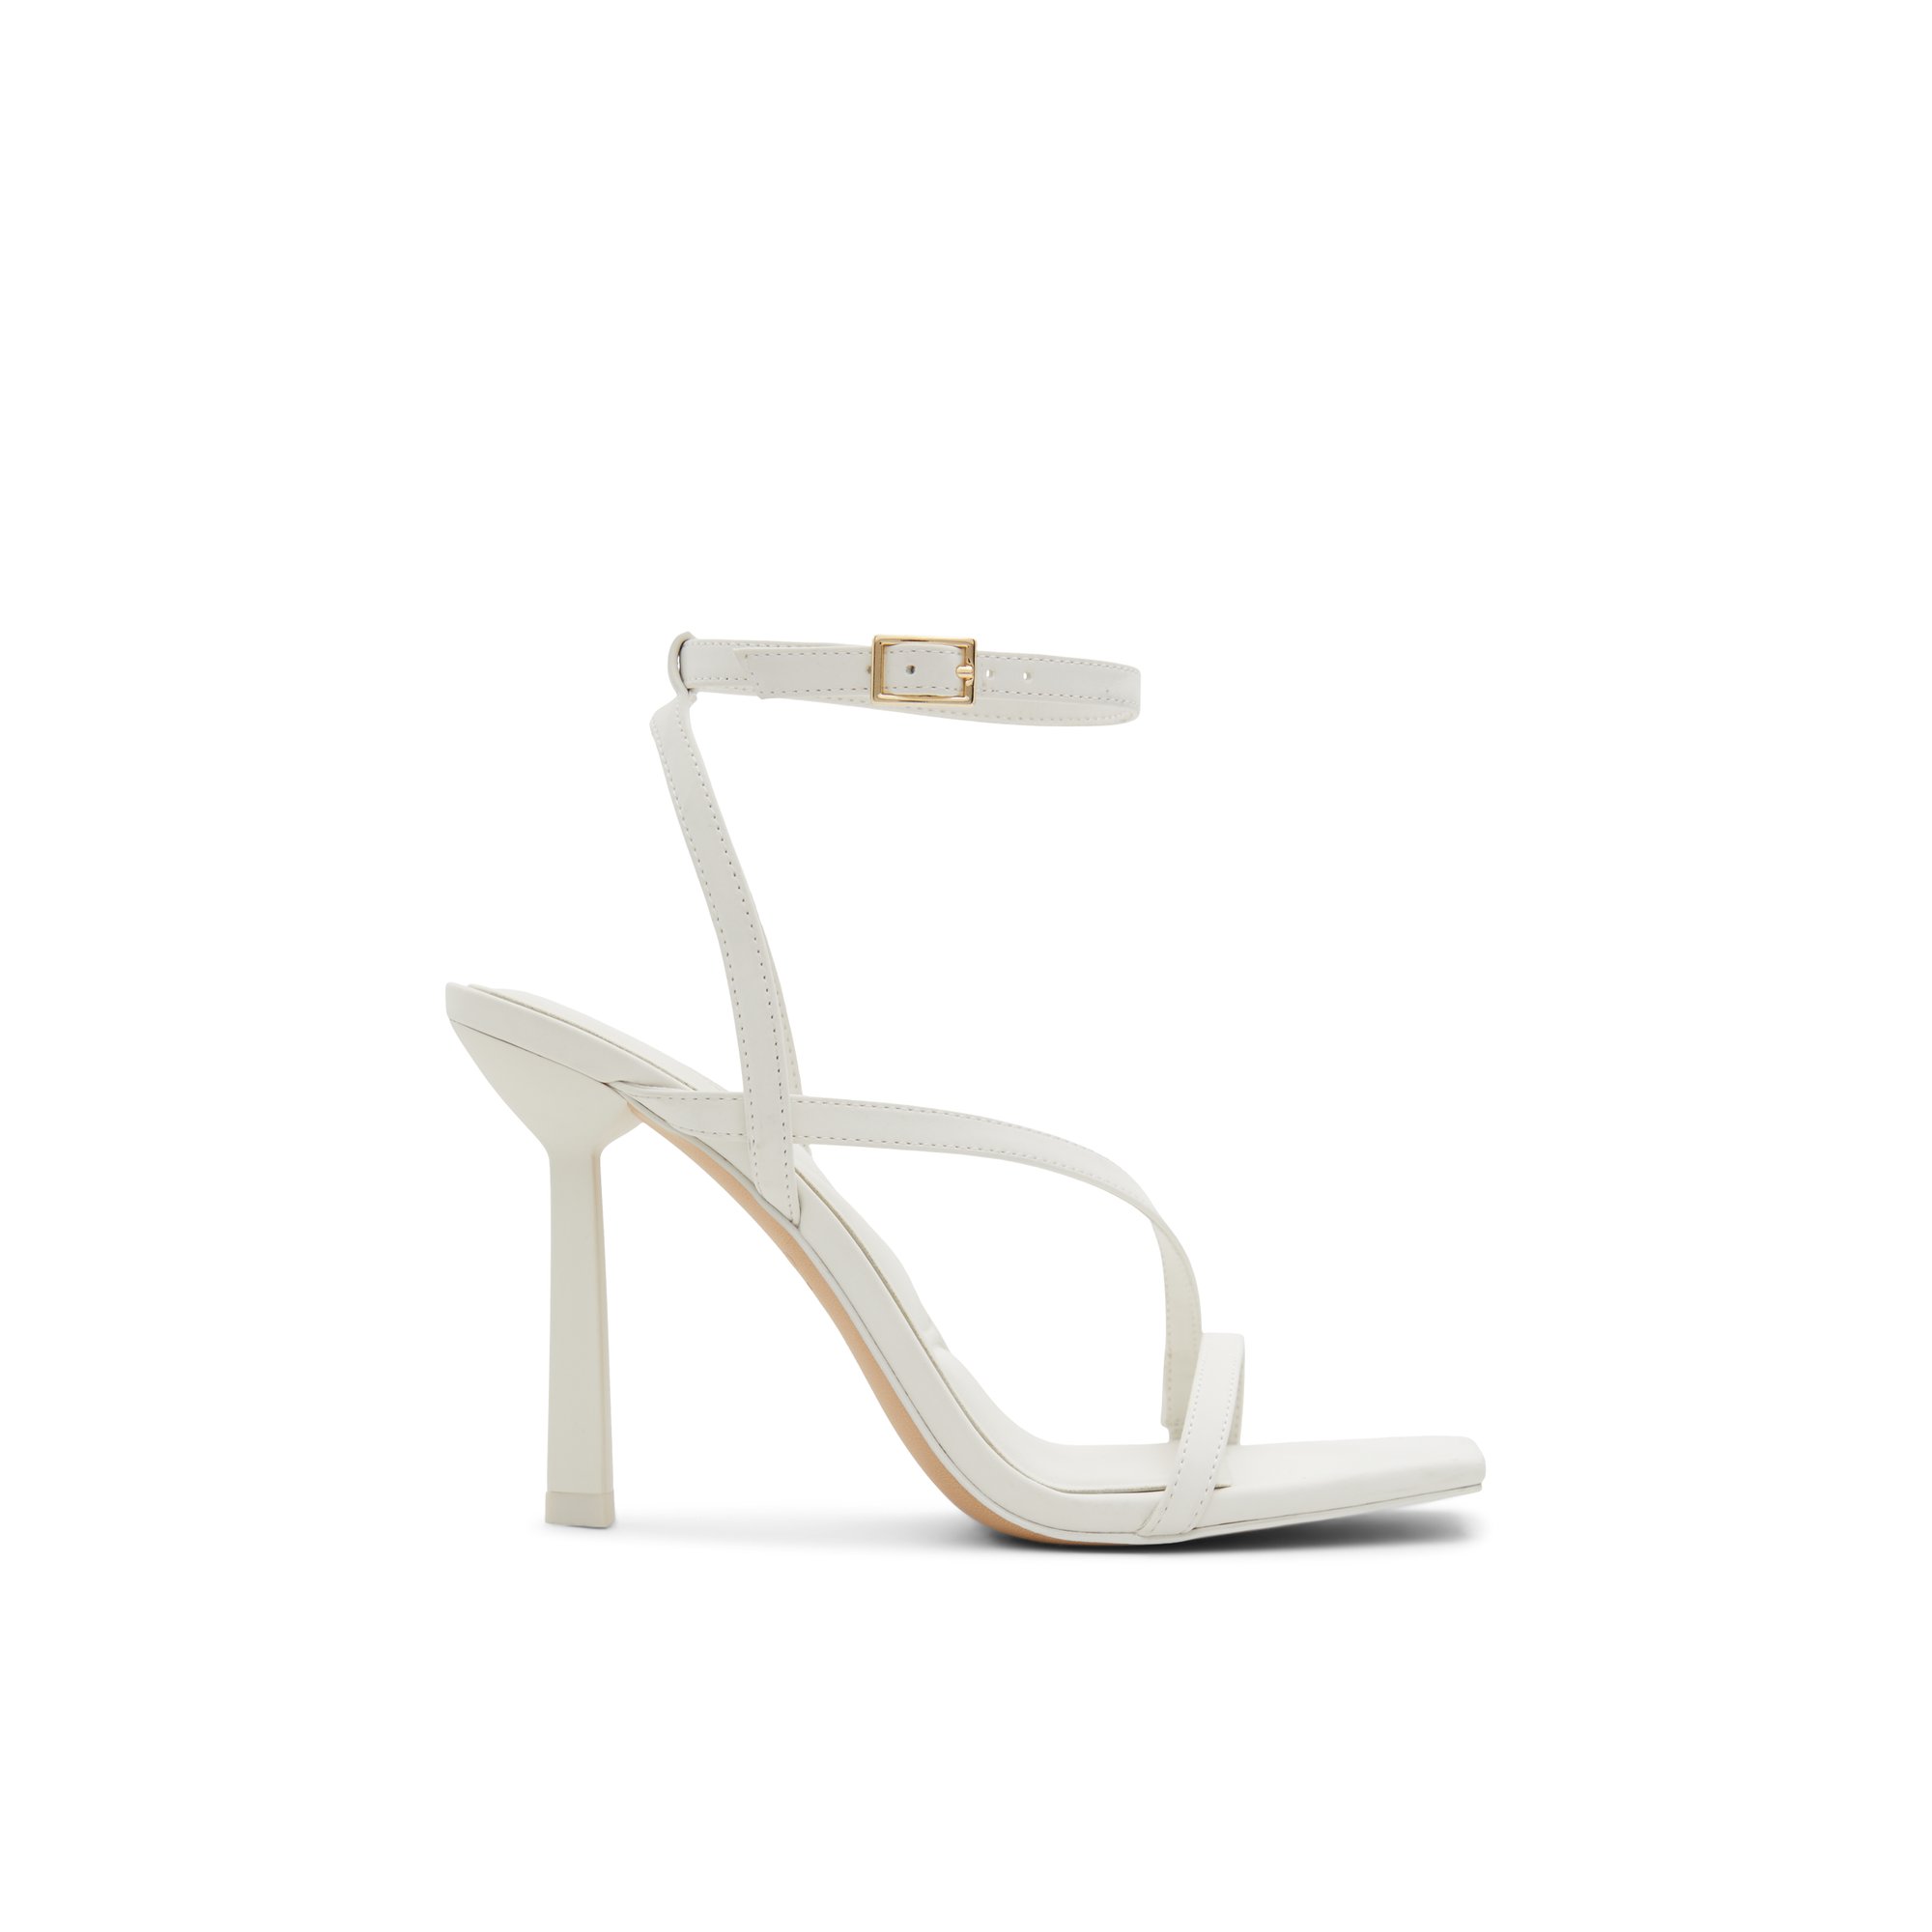 ALDO Scintilla - Women's Strappy Sandal Sandals - White